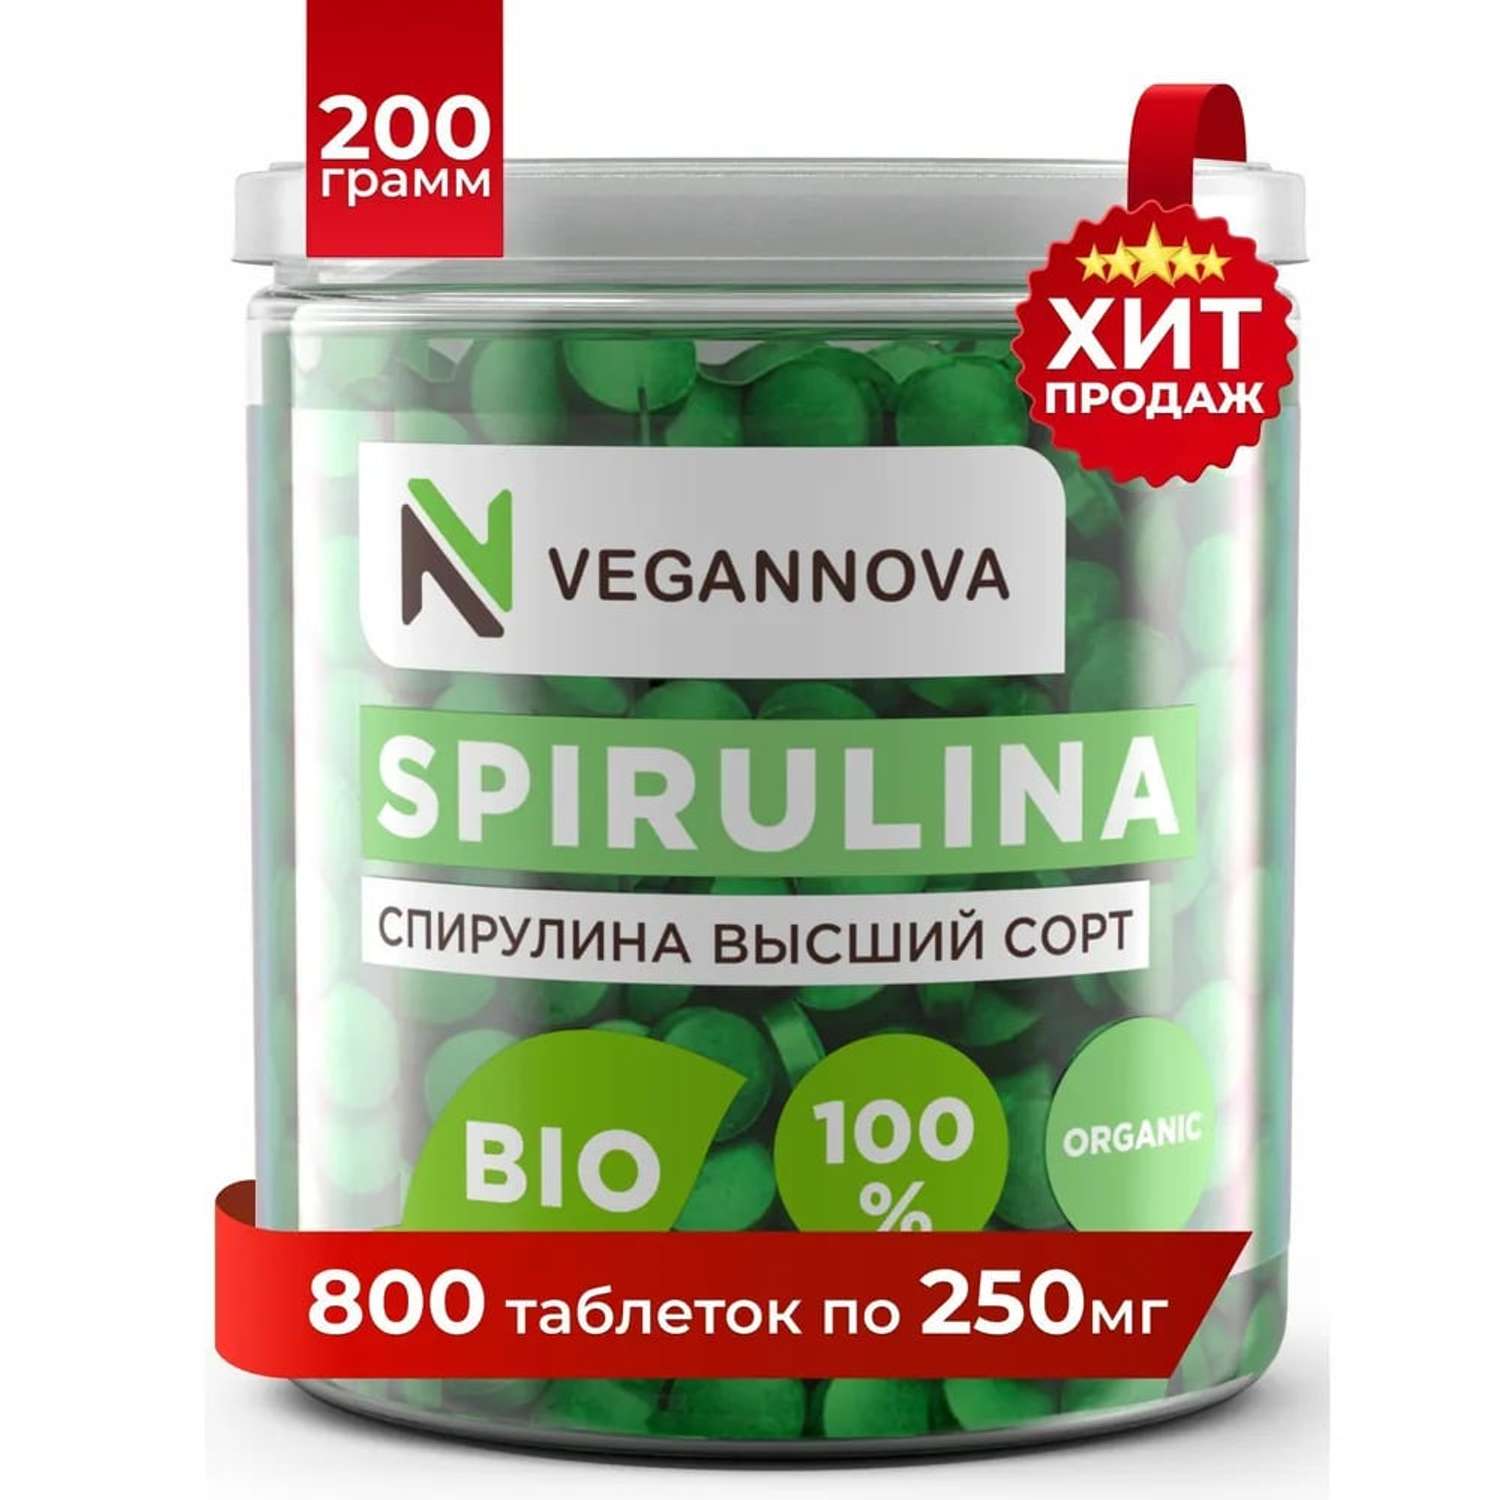 Спирулина VeganNova 200 гр таблетки для похудения Детокс снижения веса в таблетках Суперфуд здоровое питание - фото 1